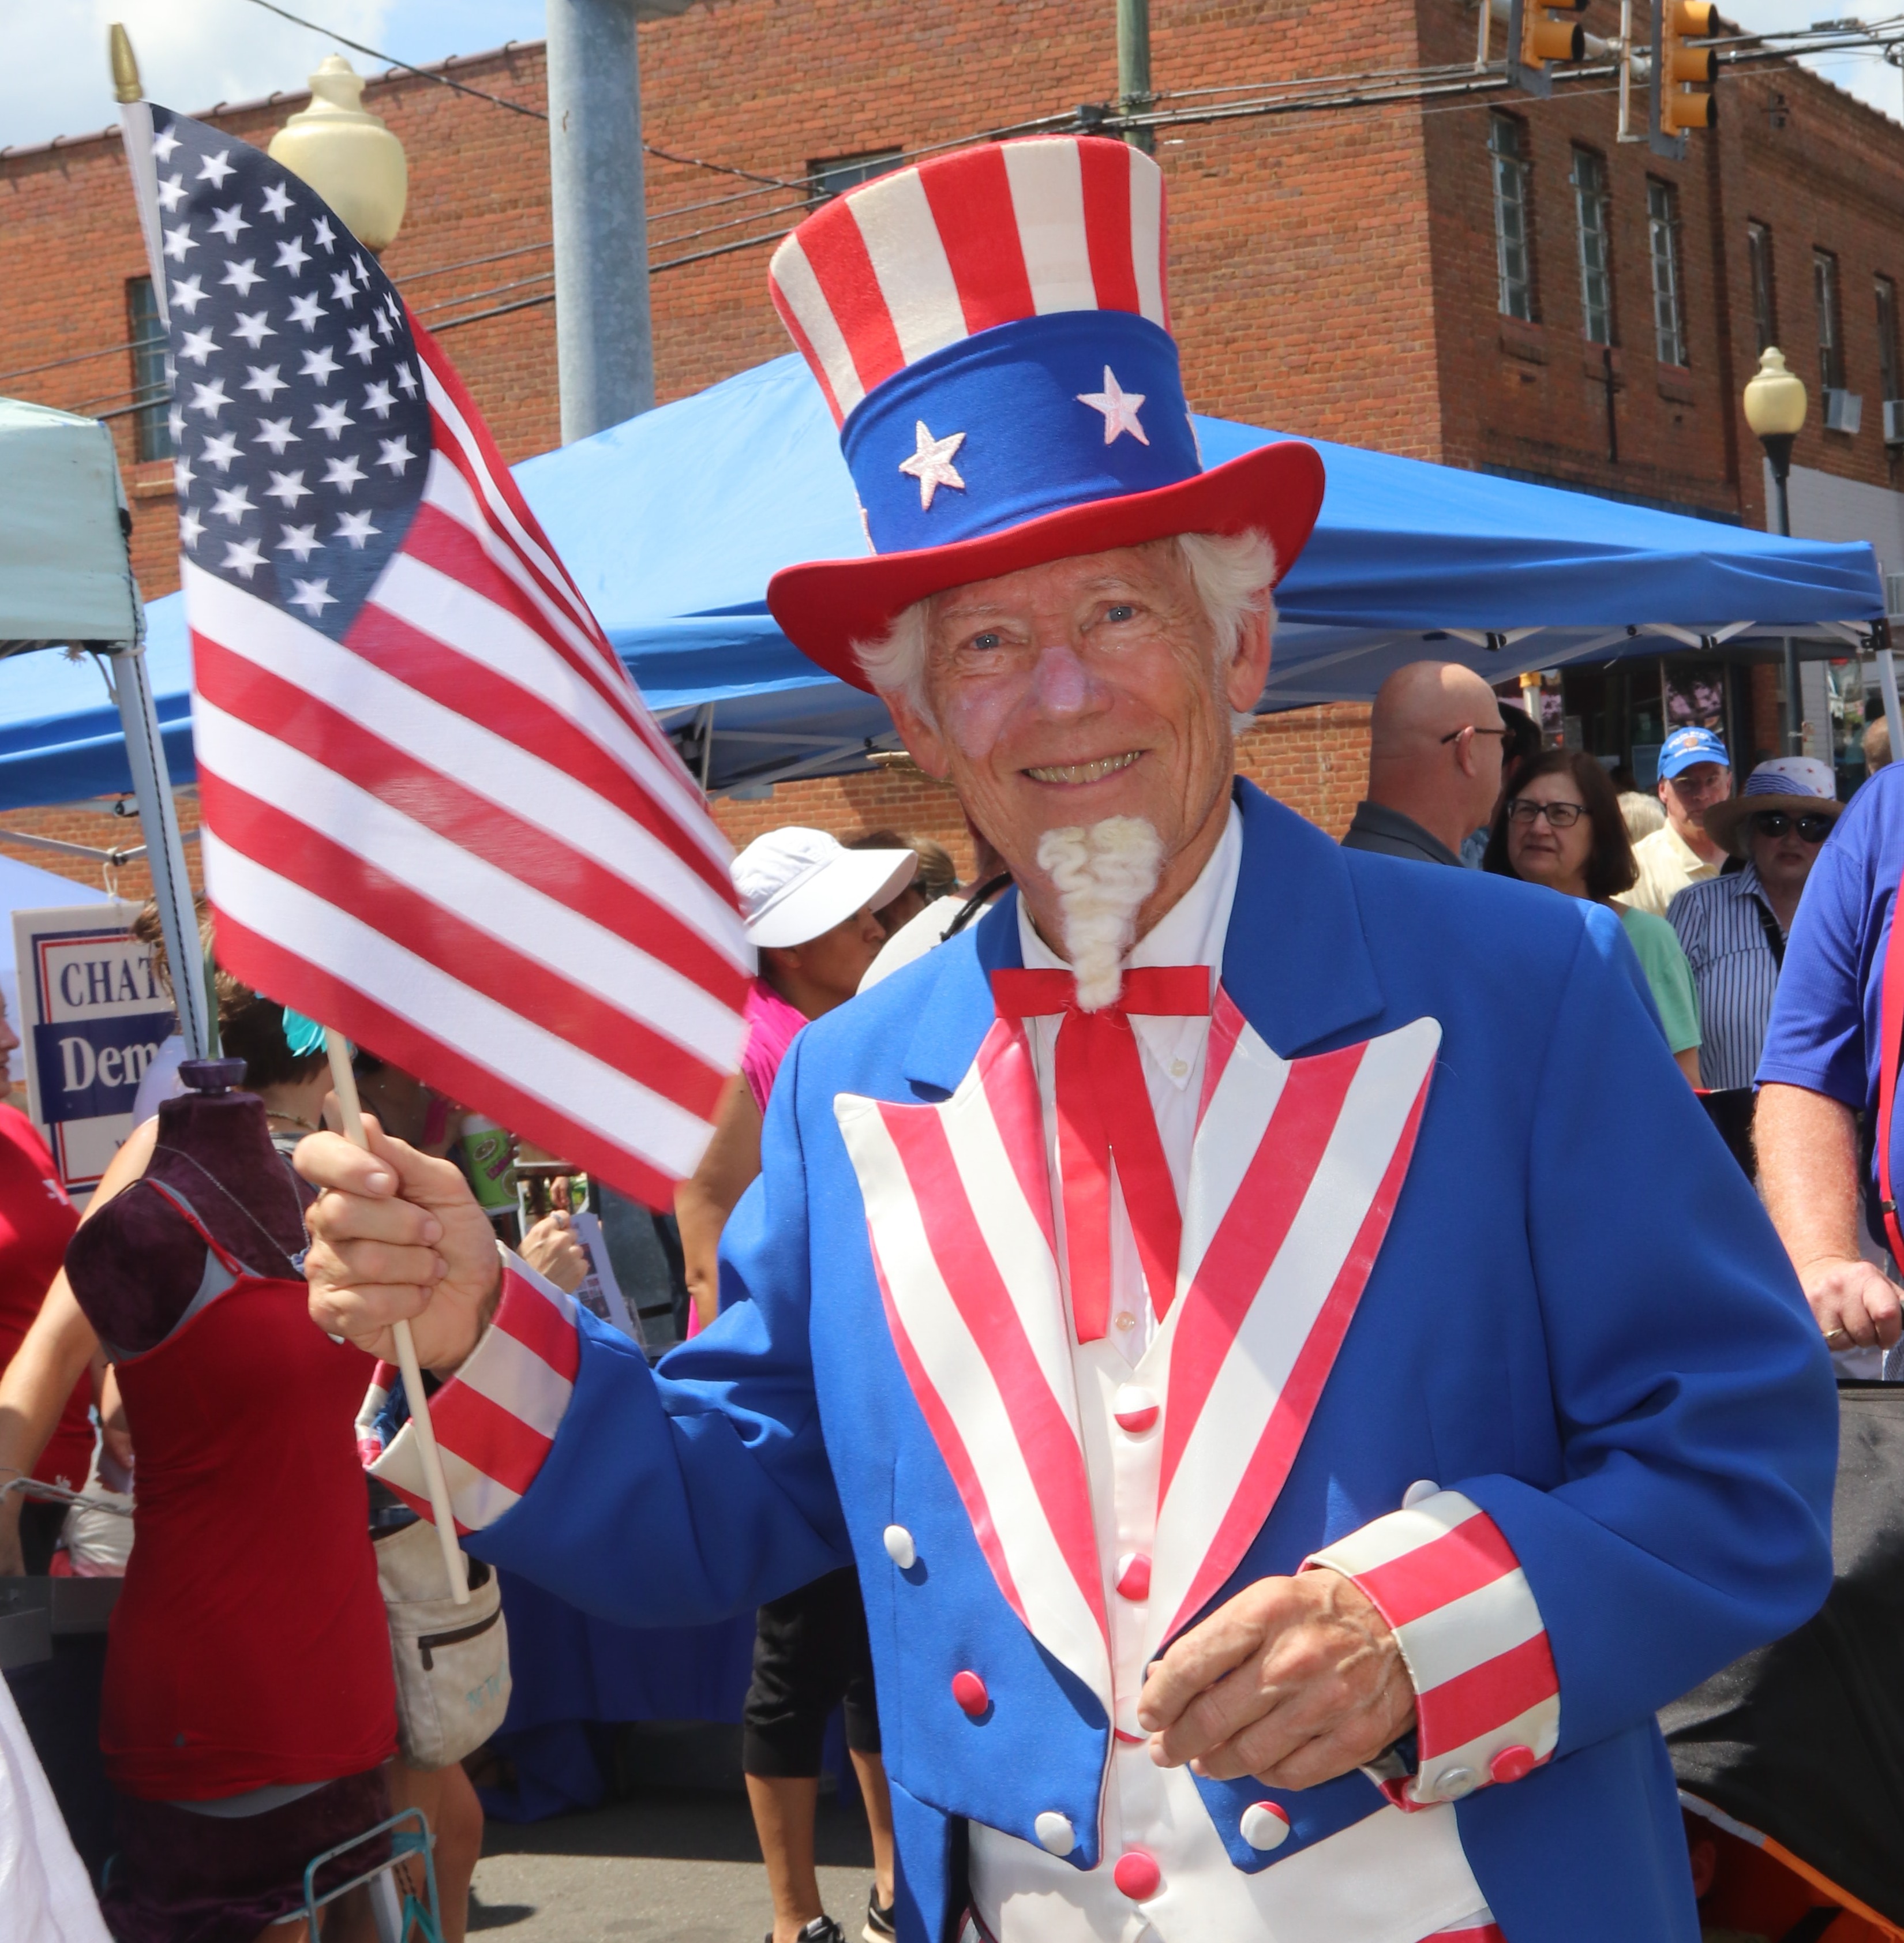 An elderly gentleman dressed as Uncle Sam.